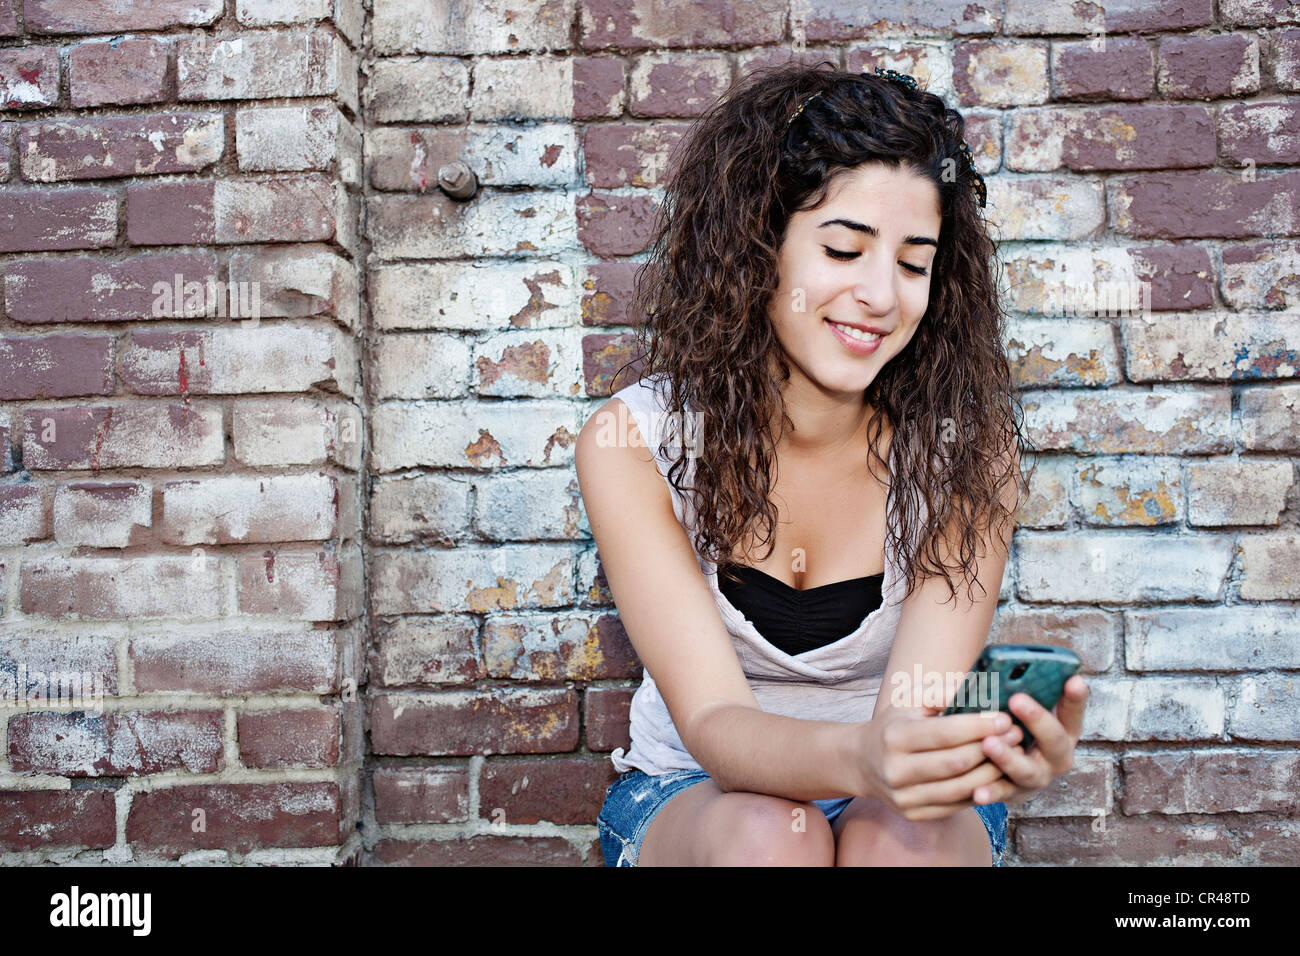 Les femmes du Moyen-Orient text messaging on cell phone Banque D'Images